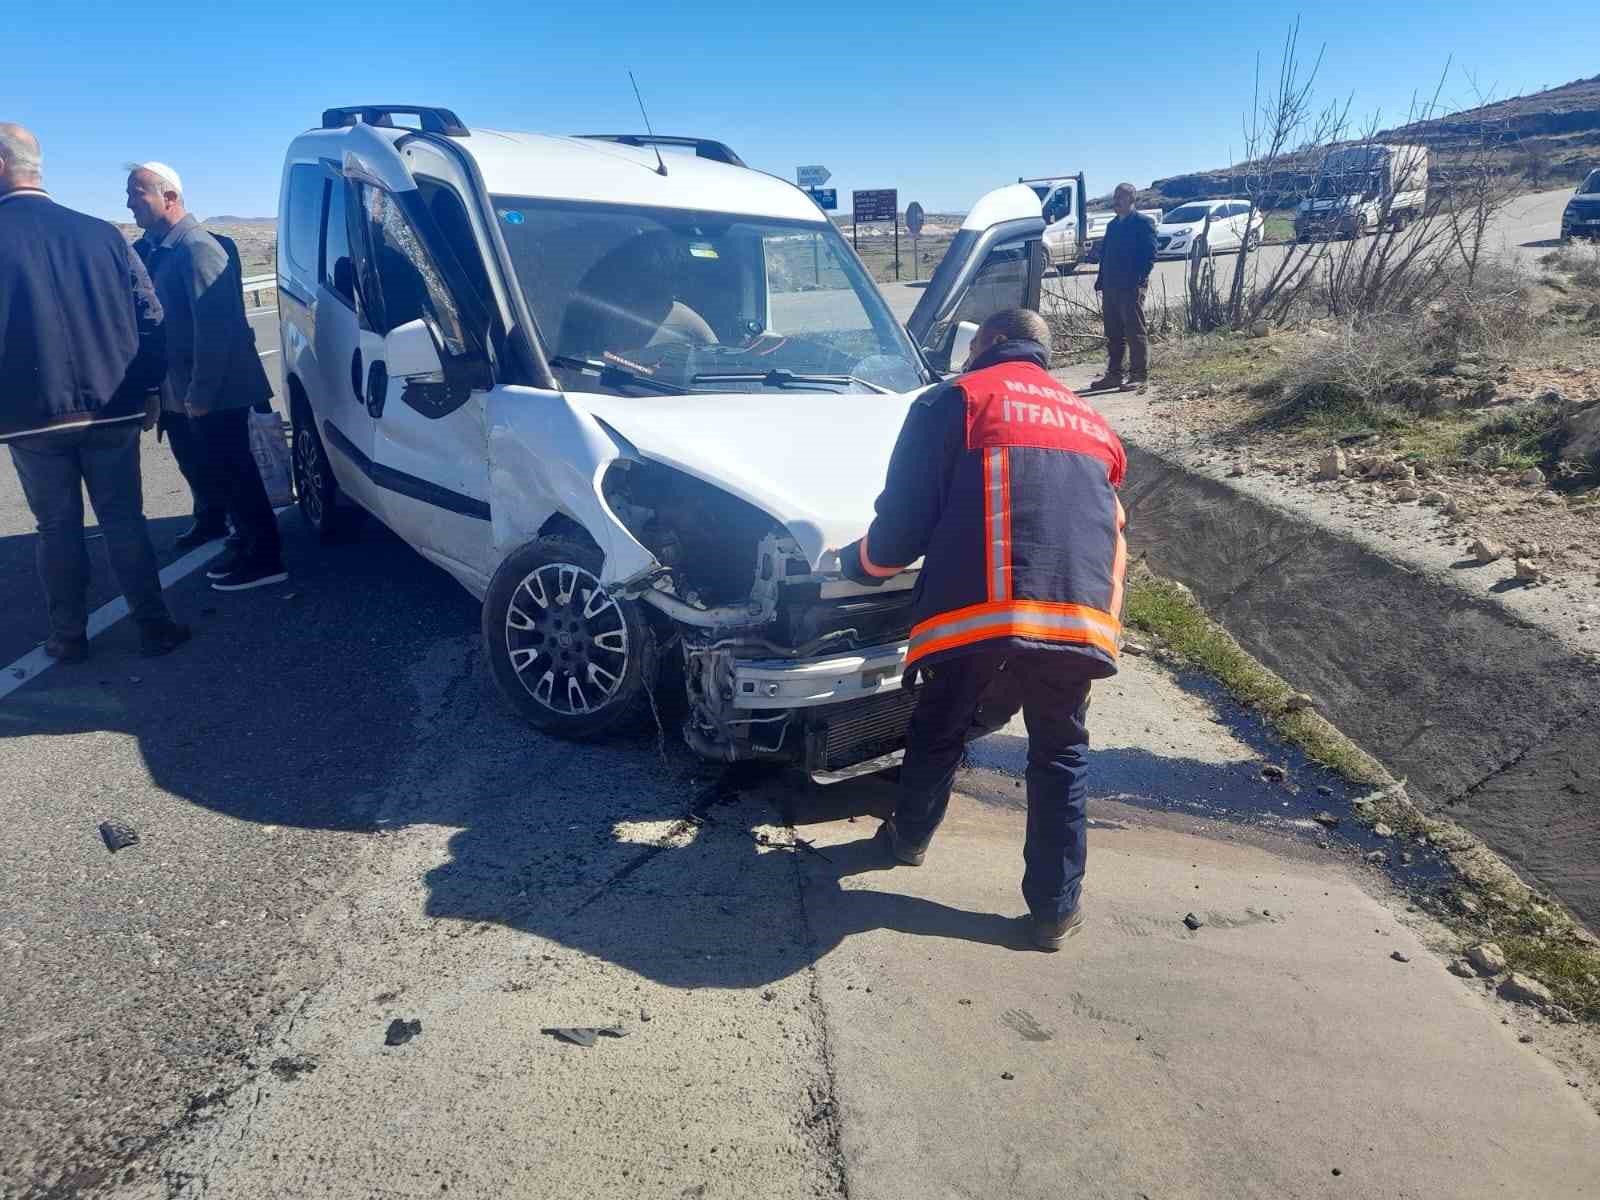 Mardin’de otomobil ile hafif ticari araç çarpıştı: 3 yaralı
